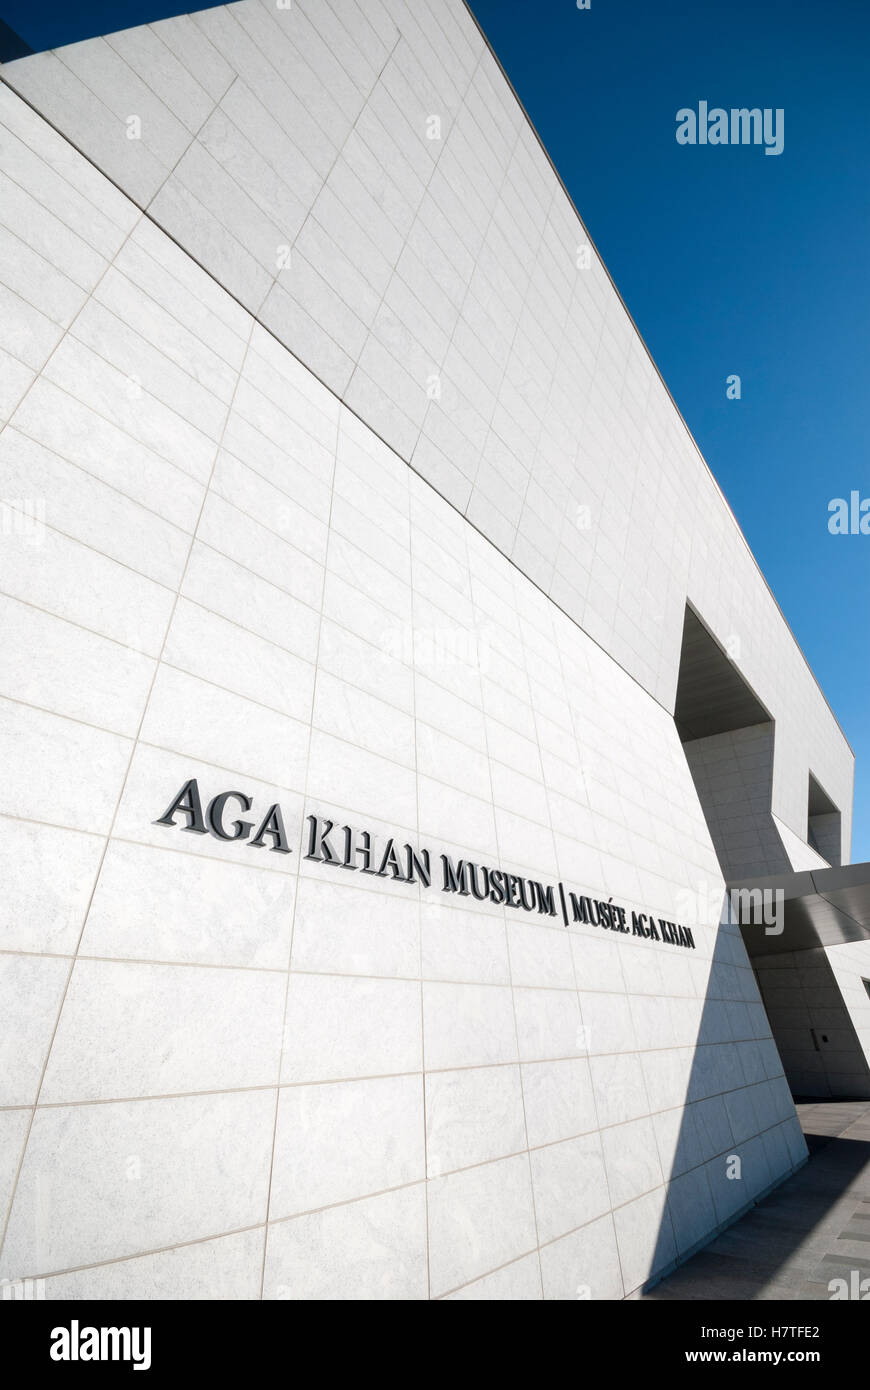 Das dramatisch moderne Äußere und der Eingang des Aga Khan Museums, einem Zentrum für islamische Kunst, iranische Kunst und muslimische Kultur in Toronto, Ontario, Kanada Stockfoto